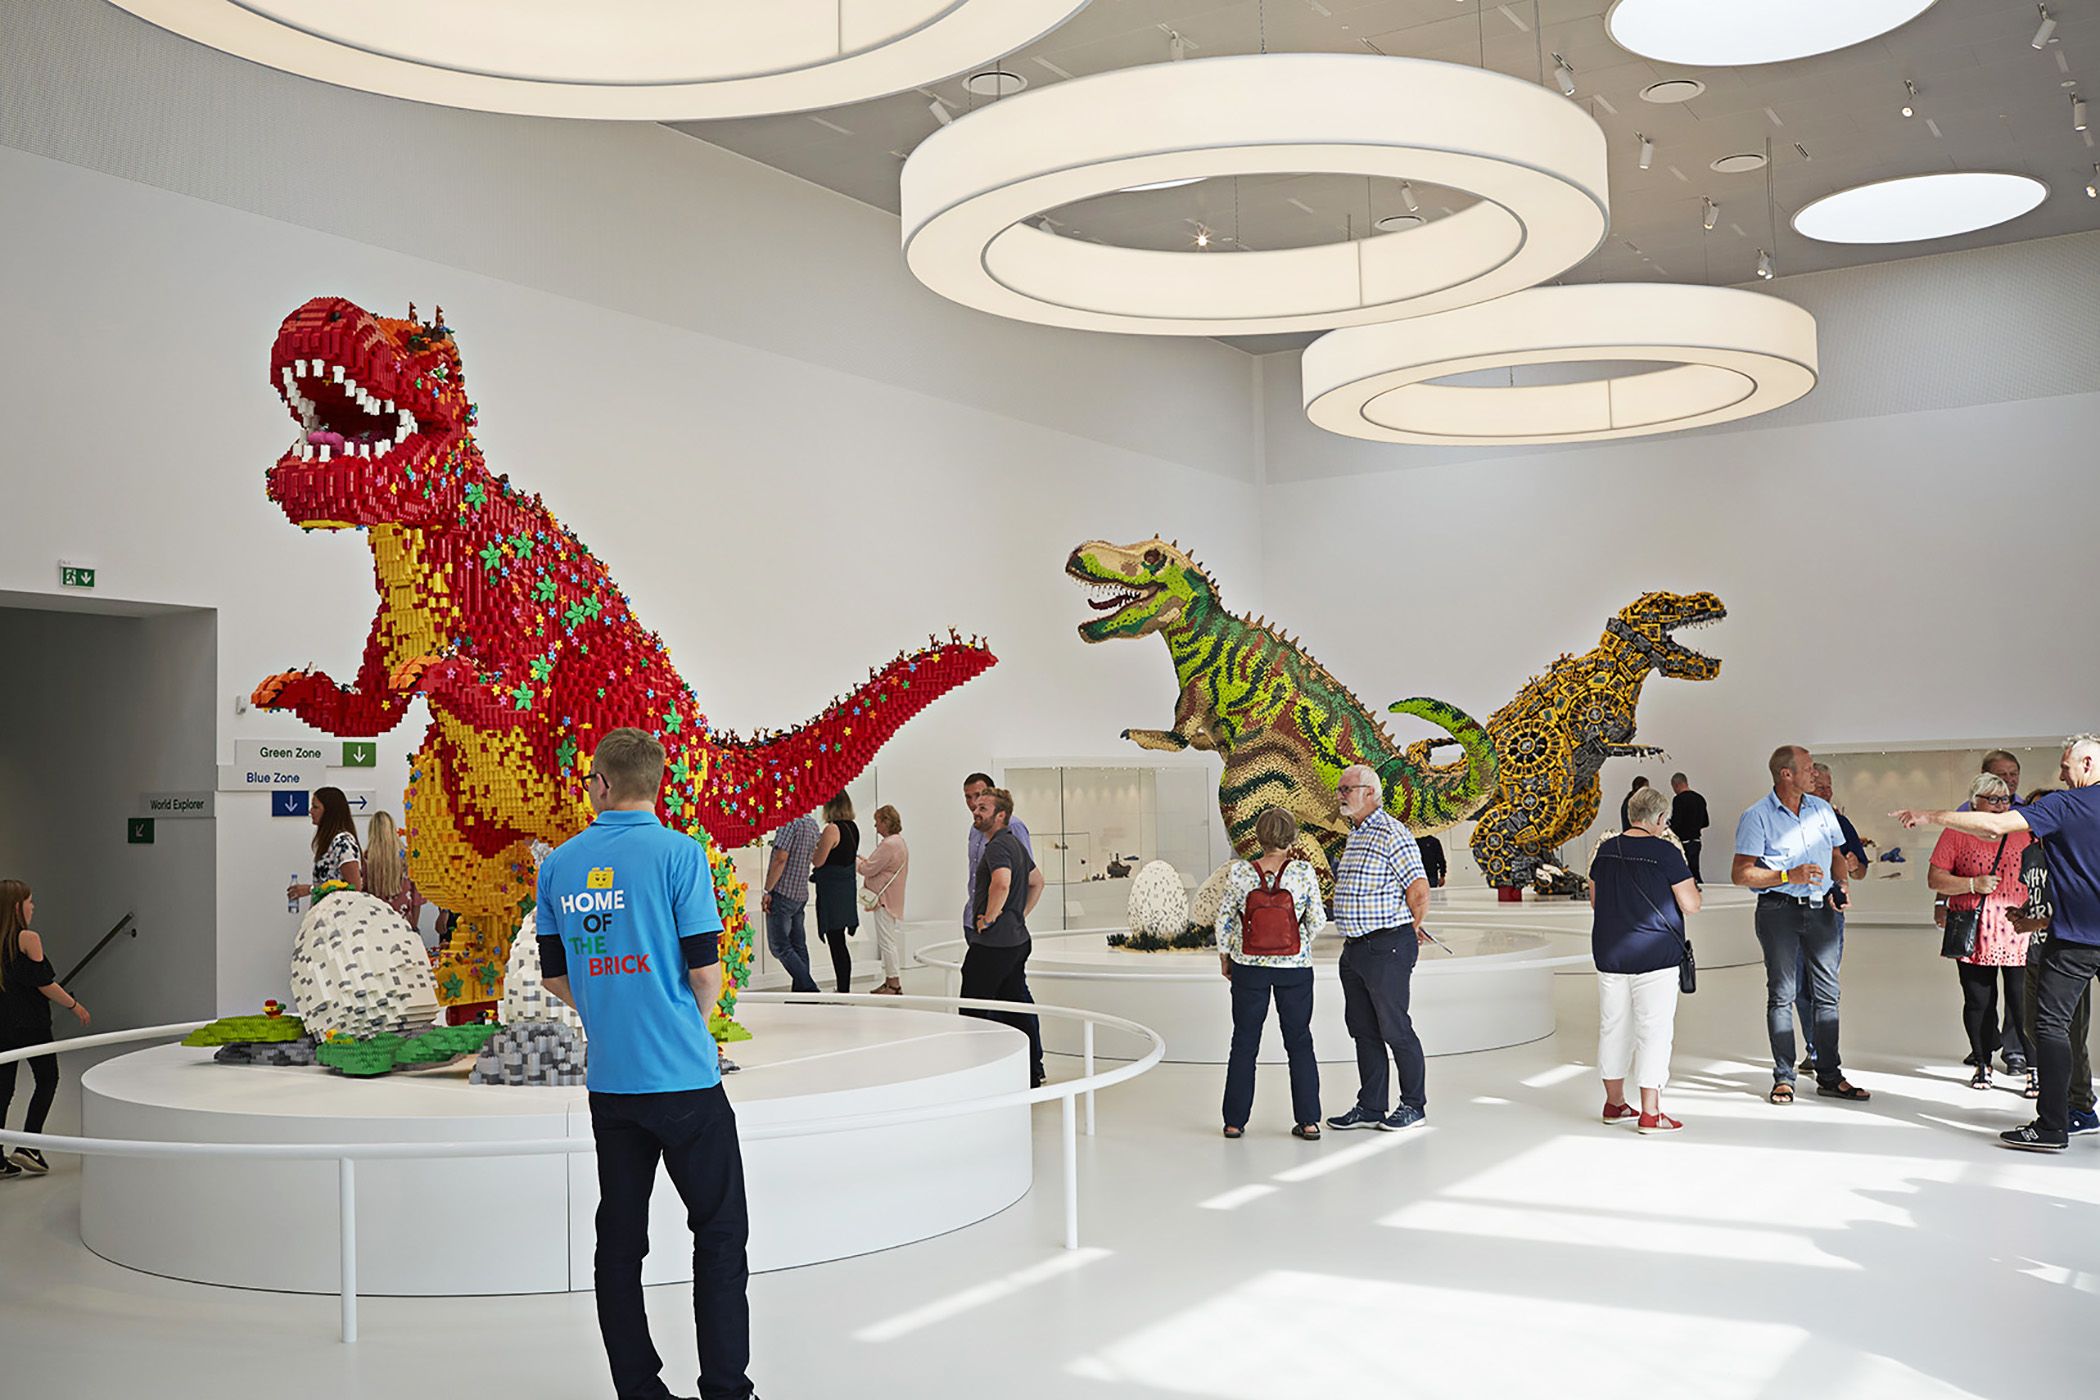 Vise dig Regeringsforordning I fare Inside Denmark's giant LEGO house | CNN